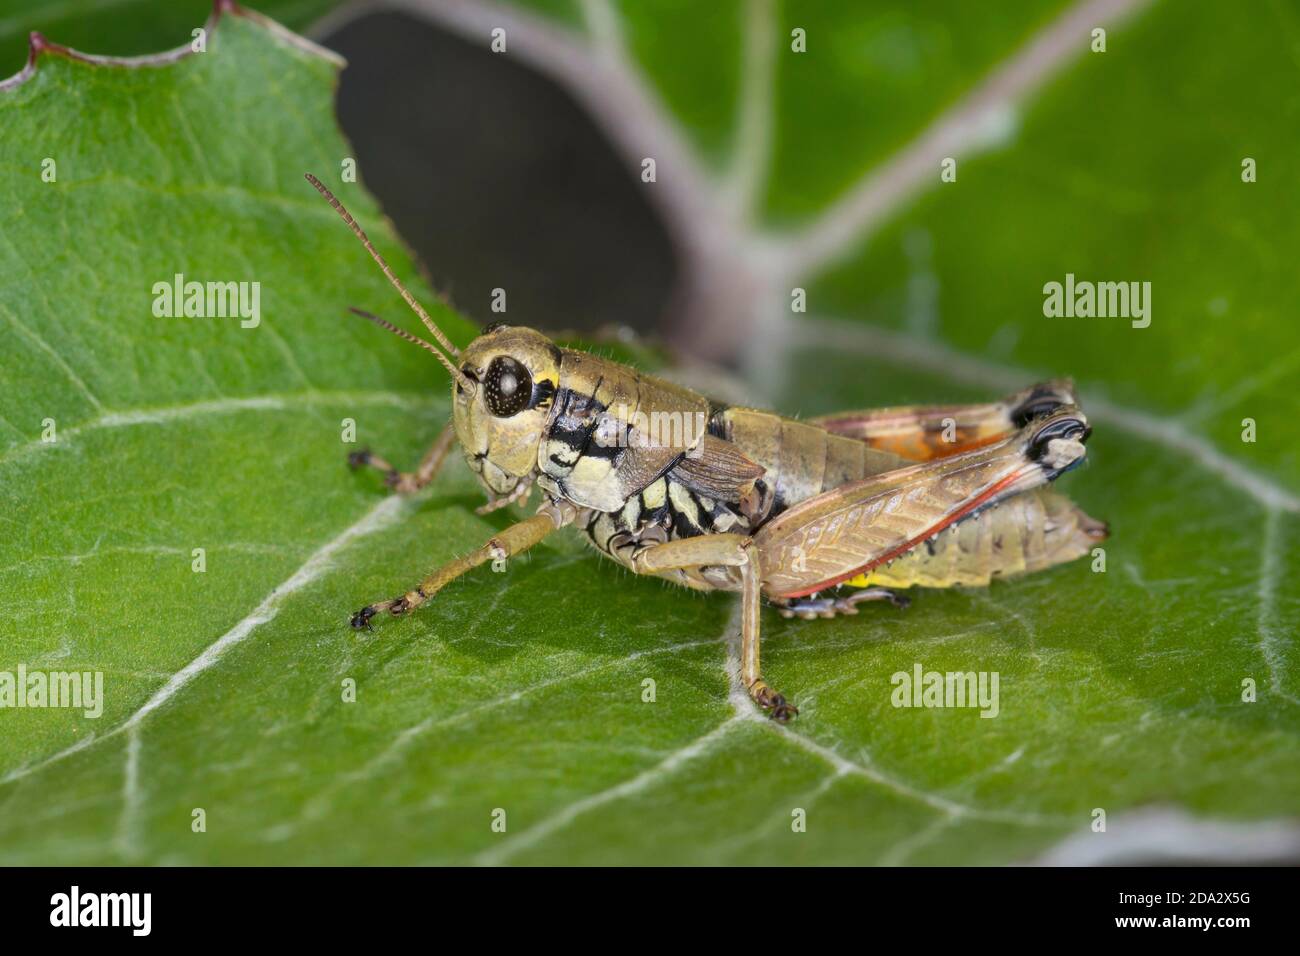 Brown mountain grasshopper (Podisma pedestris), female, Germany Stock Photo